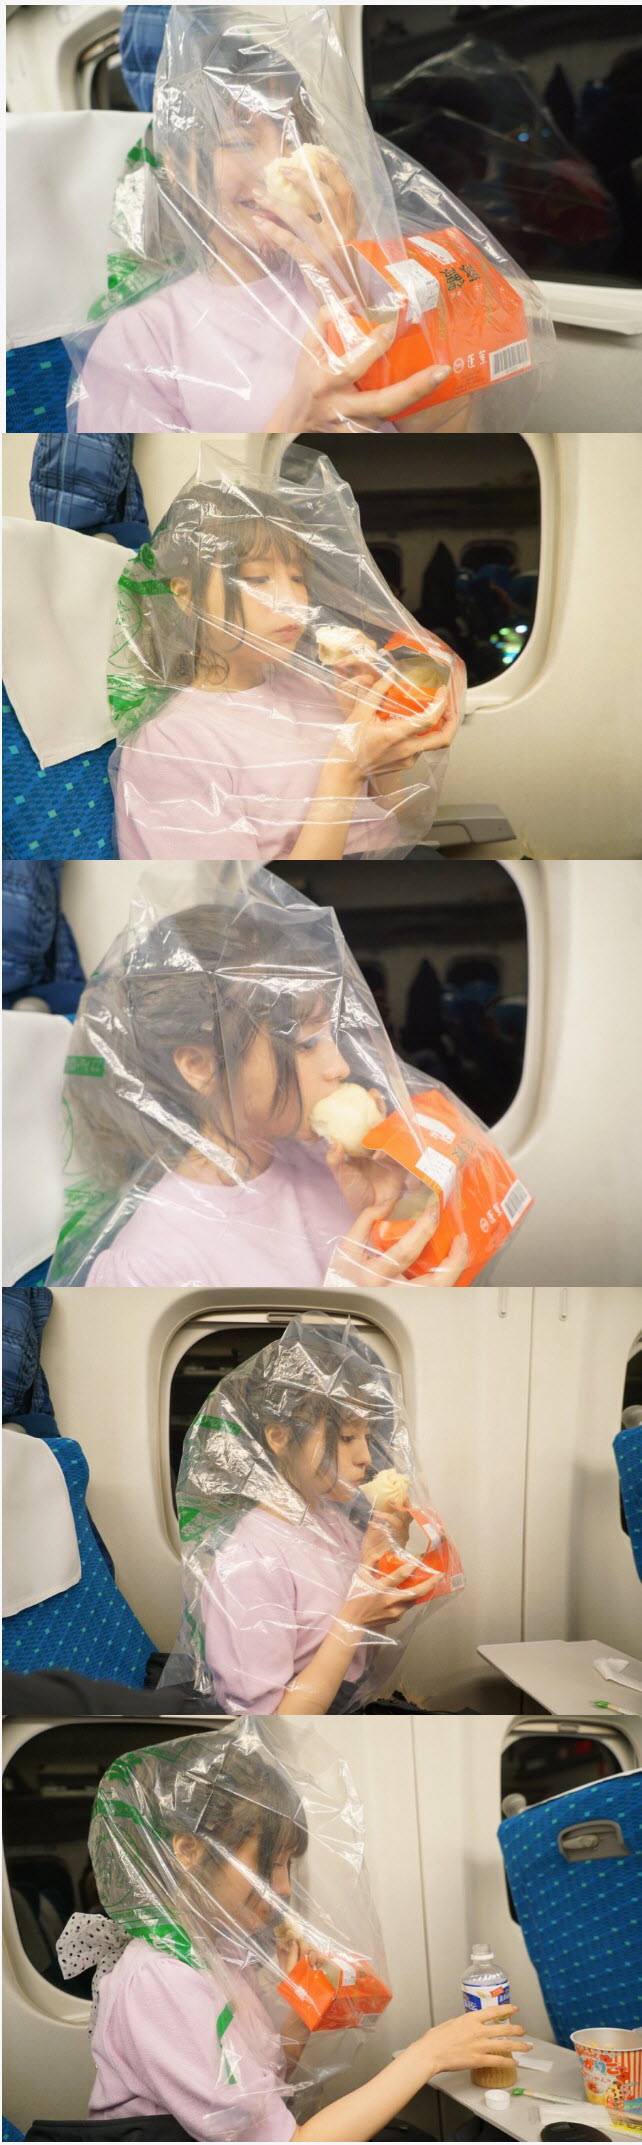 일본 열차에서 음식 섭취하는 매너